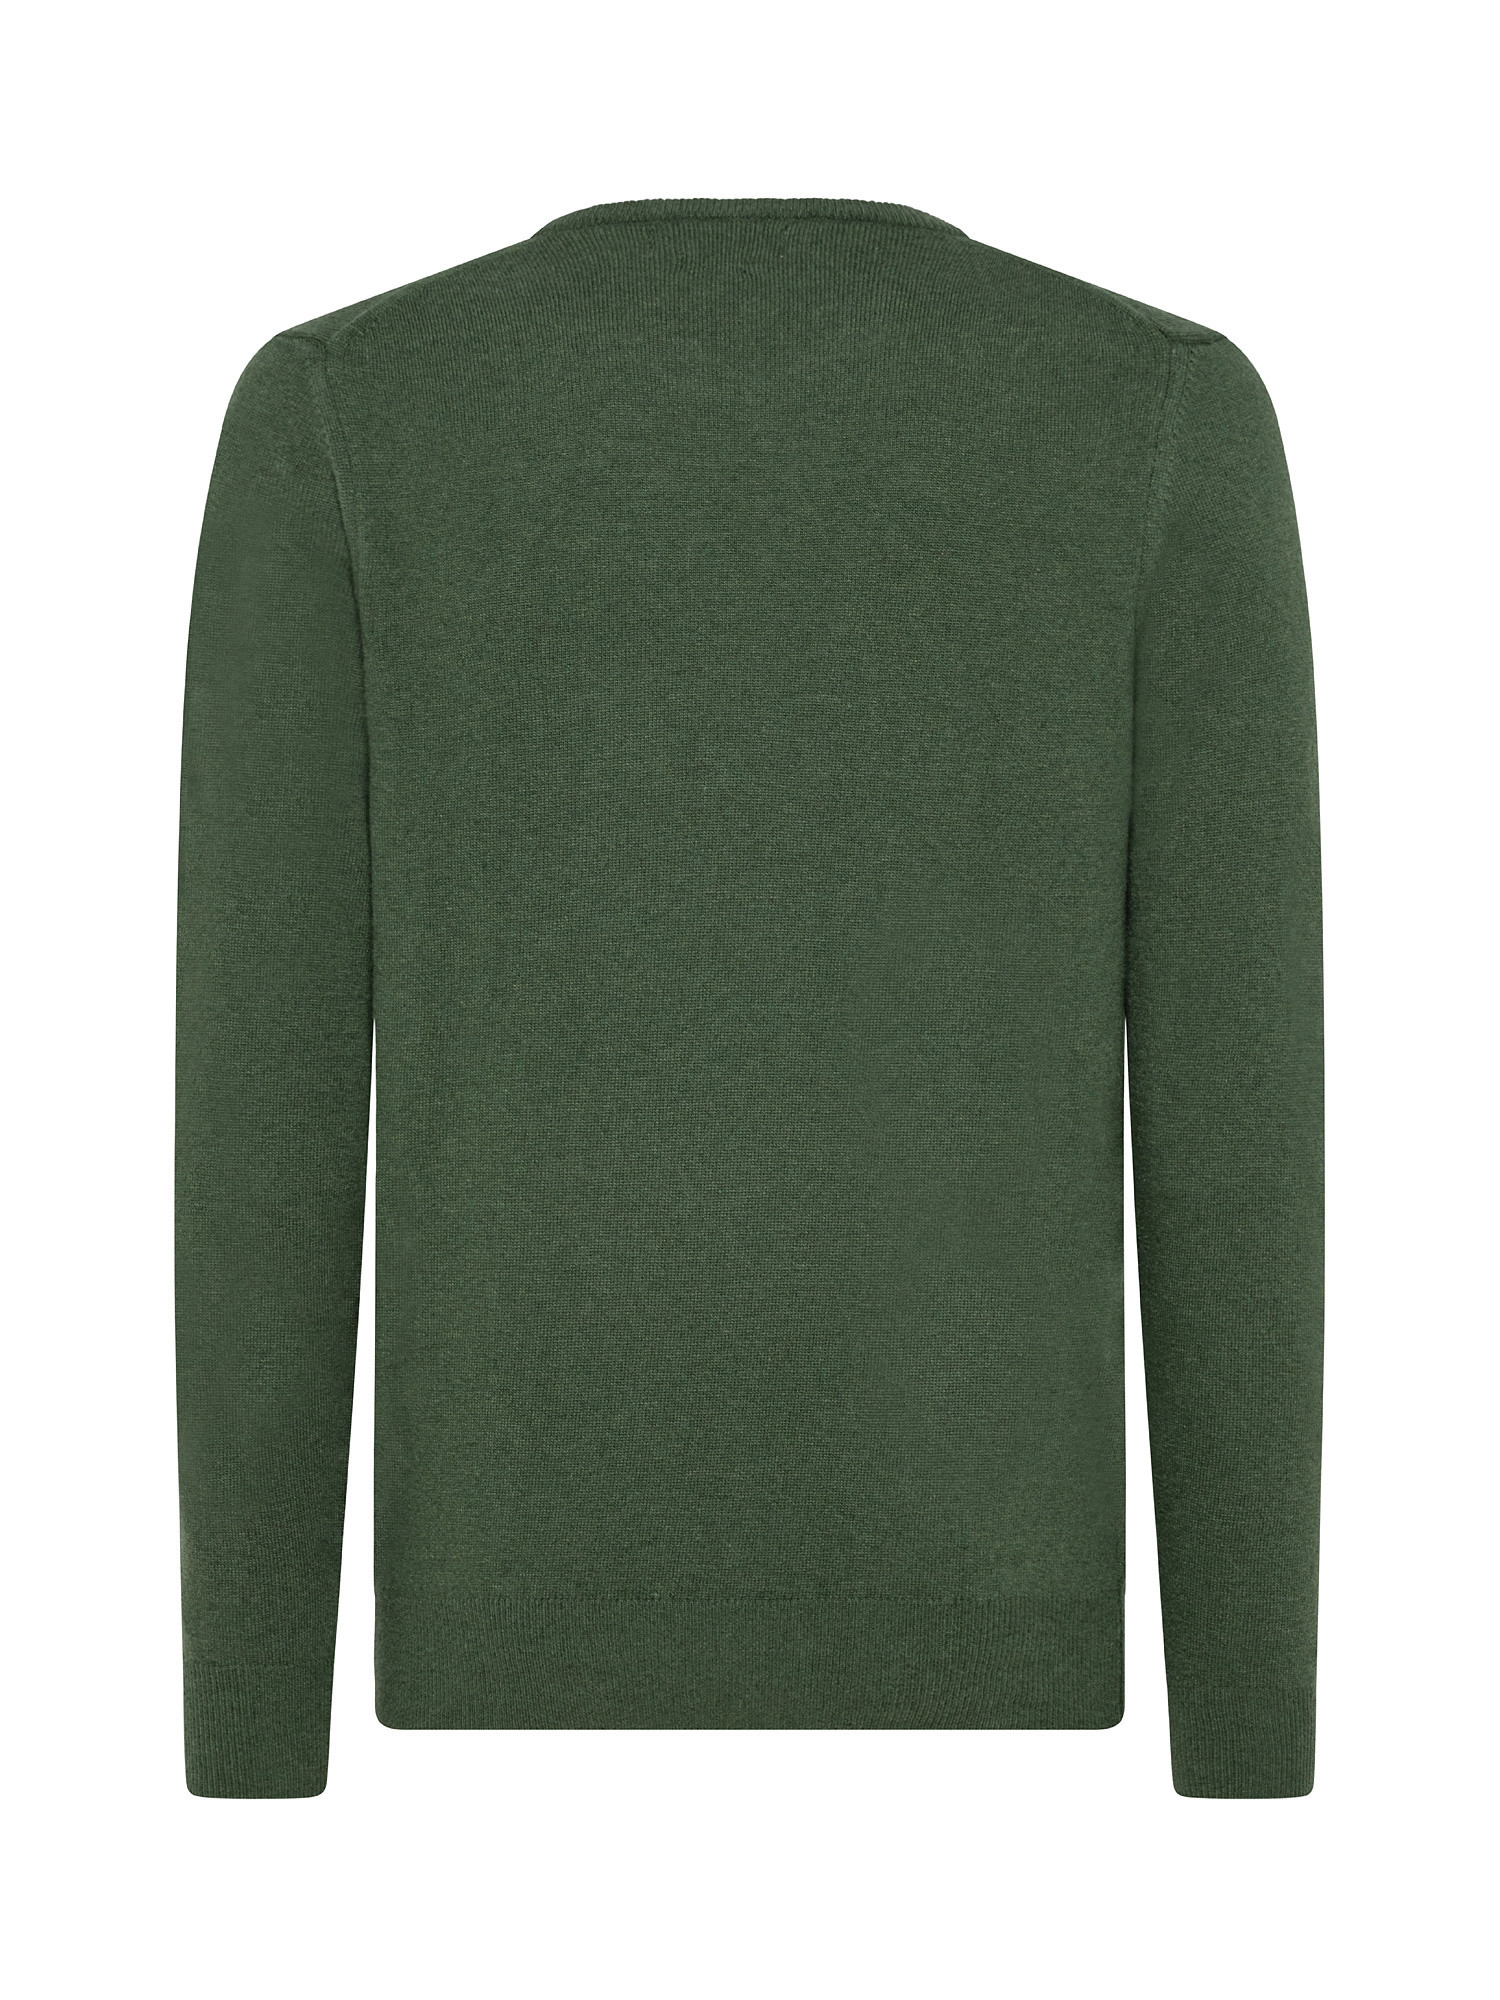 Basic cashmere blend pullover, Green, large image number 1